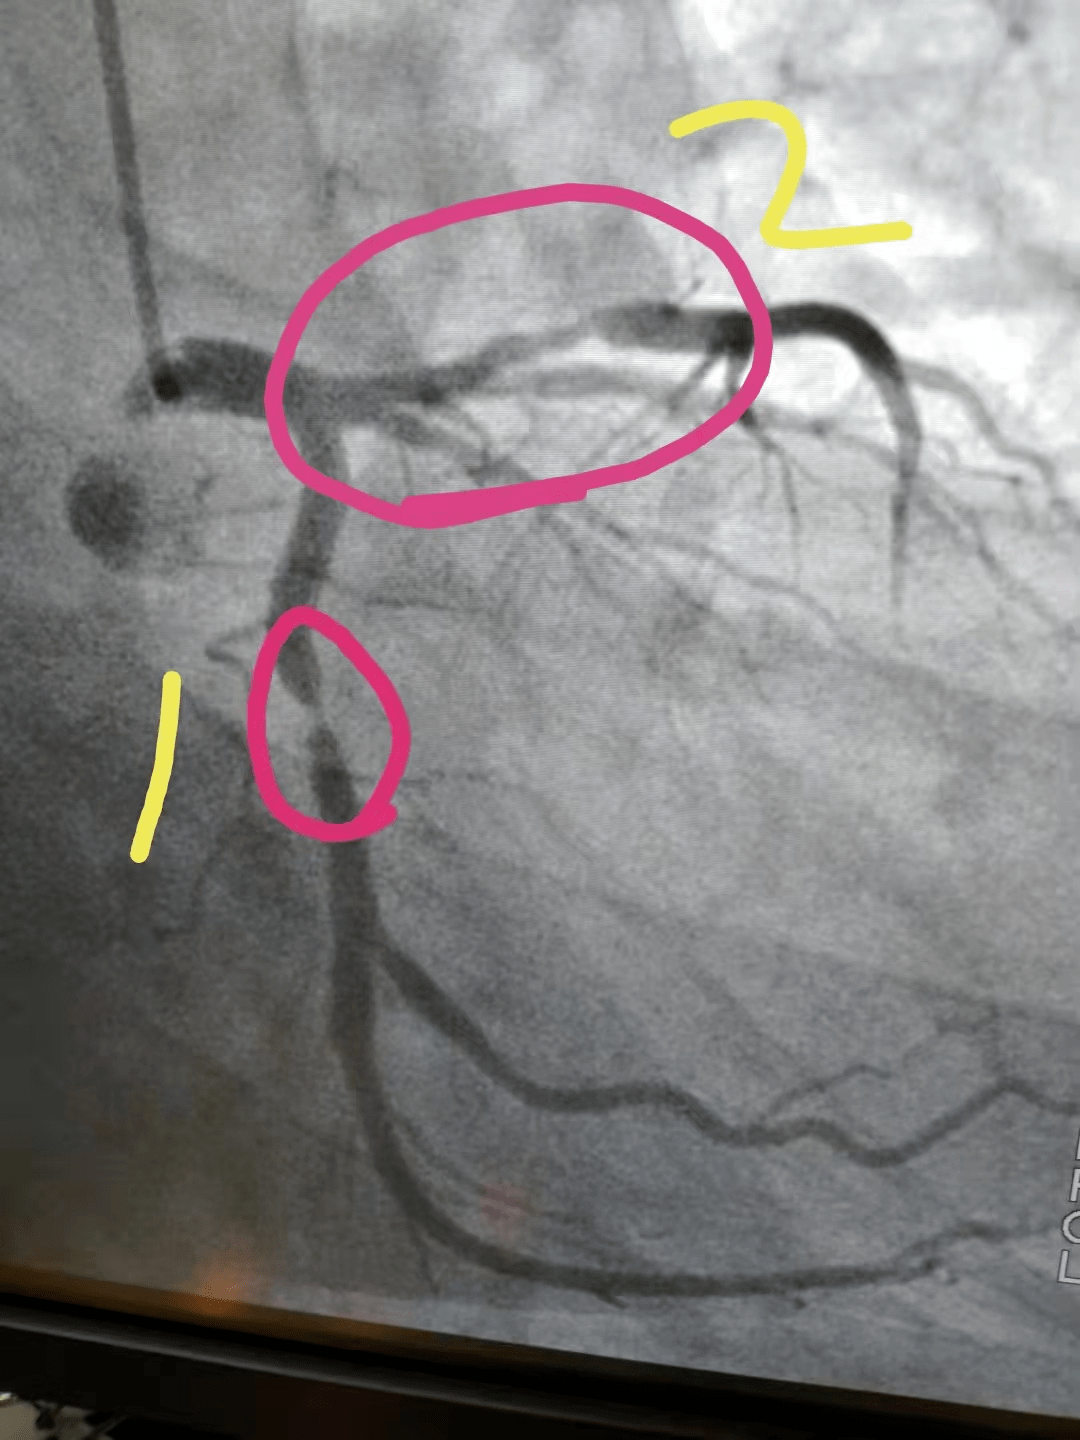 随后做了心脏造影,大家可以看看,黄色1号这根血管,当时重度狭窄98%